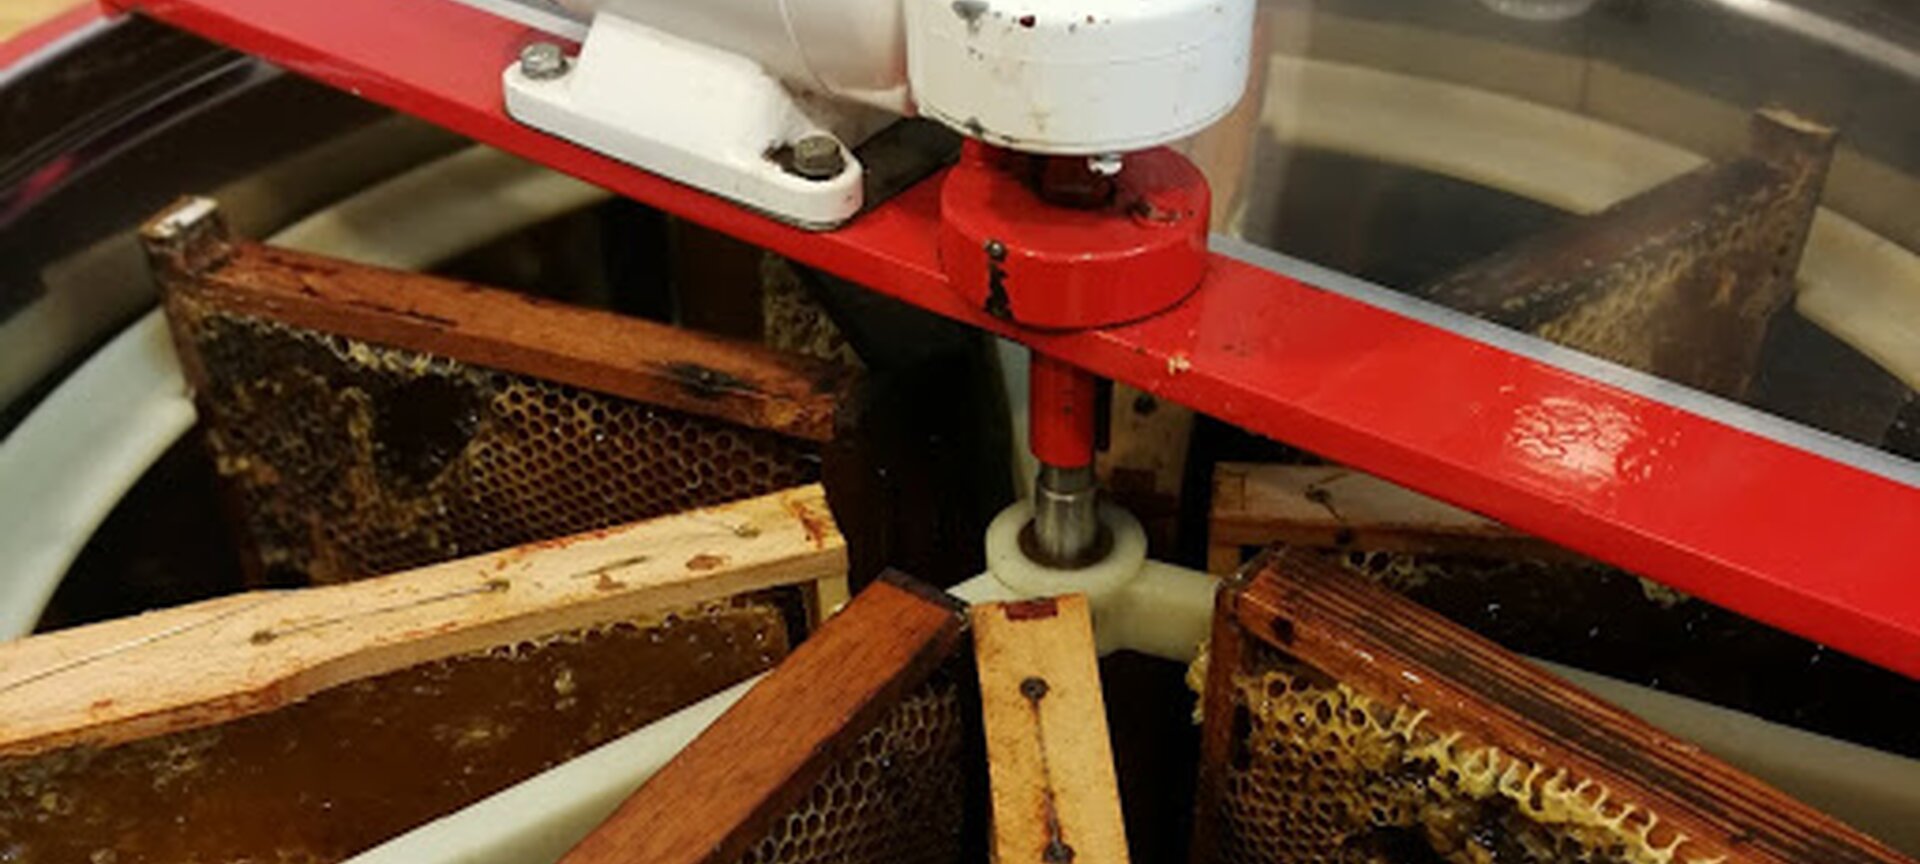 Imkerij 't Fleurtje Limburgse Honing soorten - klaar om te slingeren